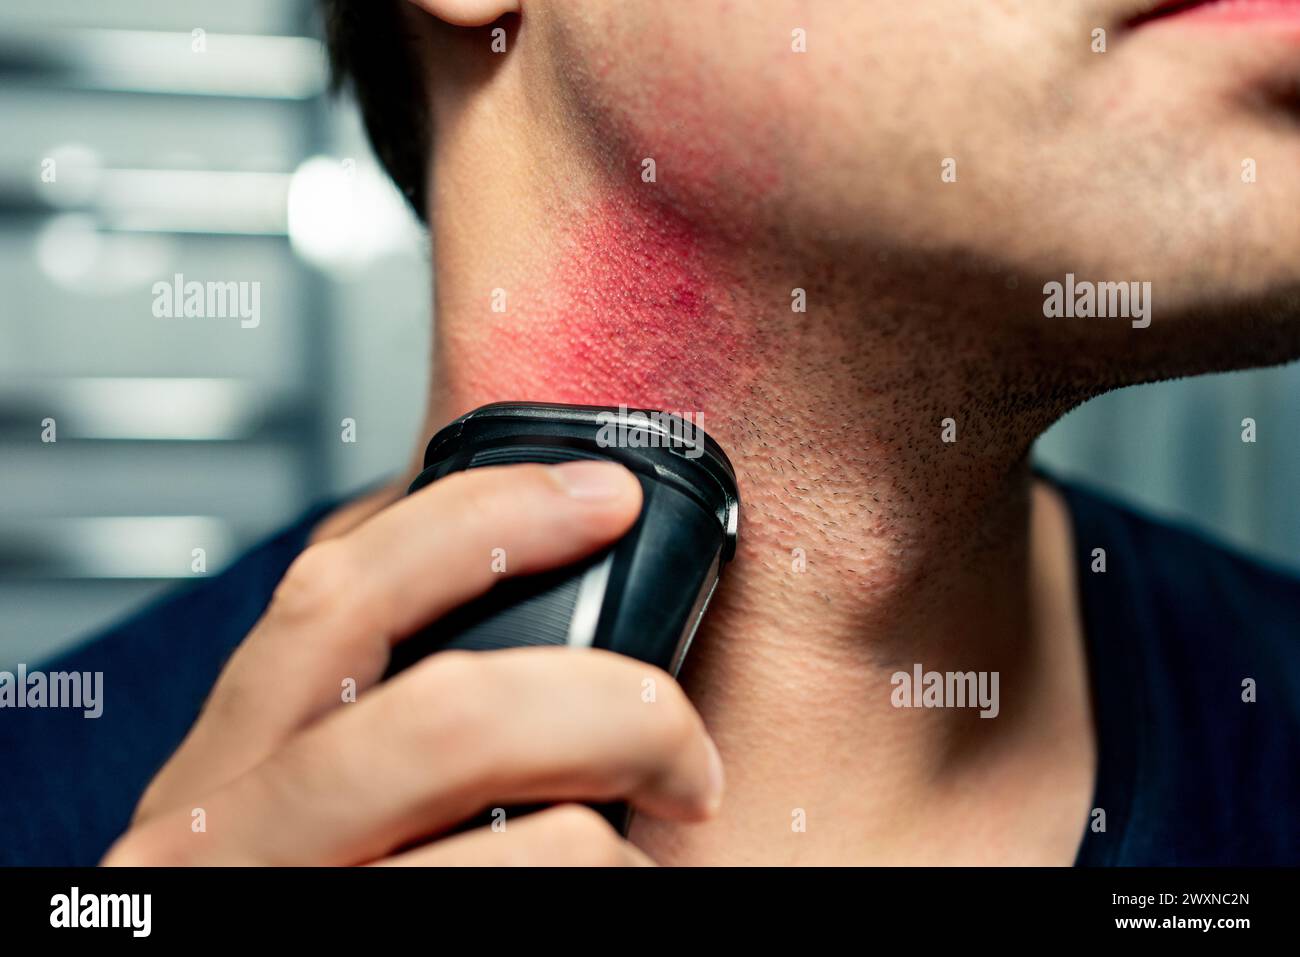 Rasierbrand, Hautausschlag und Hautirritationen. Elektrorasierer. Eingewachsenes Haar im Gesicht. Problem mit der Bartpflegemaschine und dem Trimmer. Mann im Badezimmer. Stockfoto